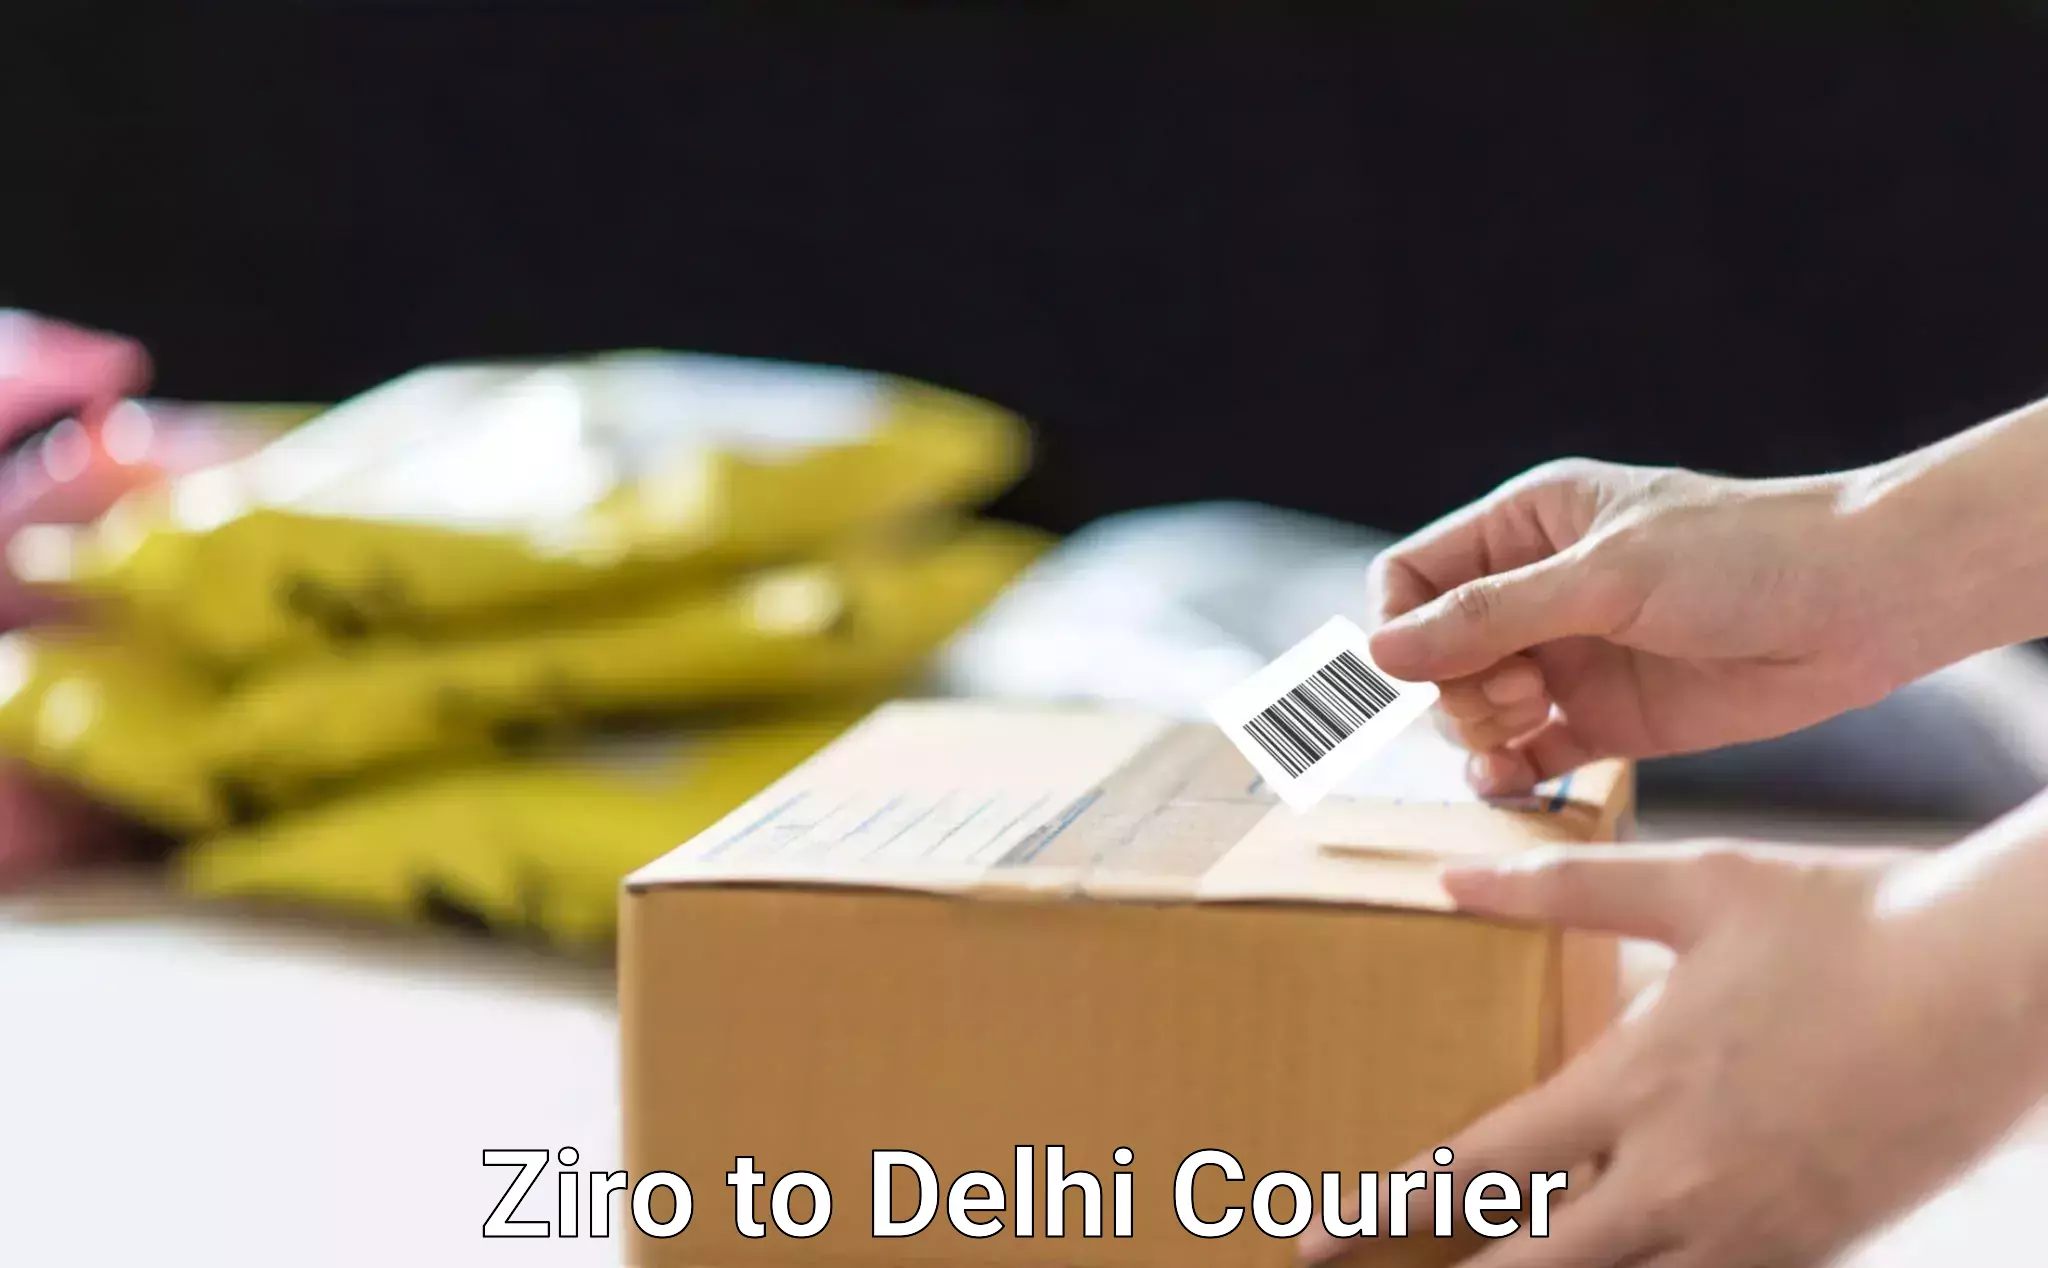 Door-to-door freight service Ziro to University of Delhi